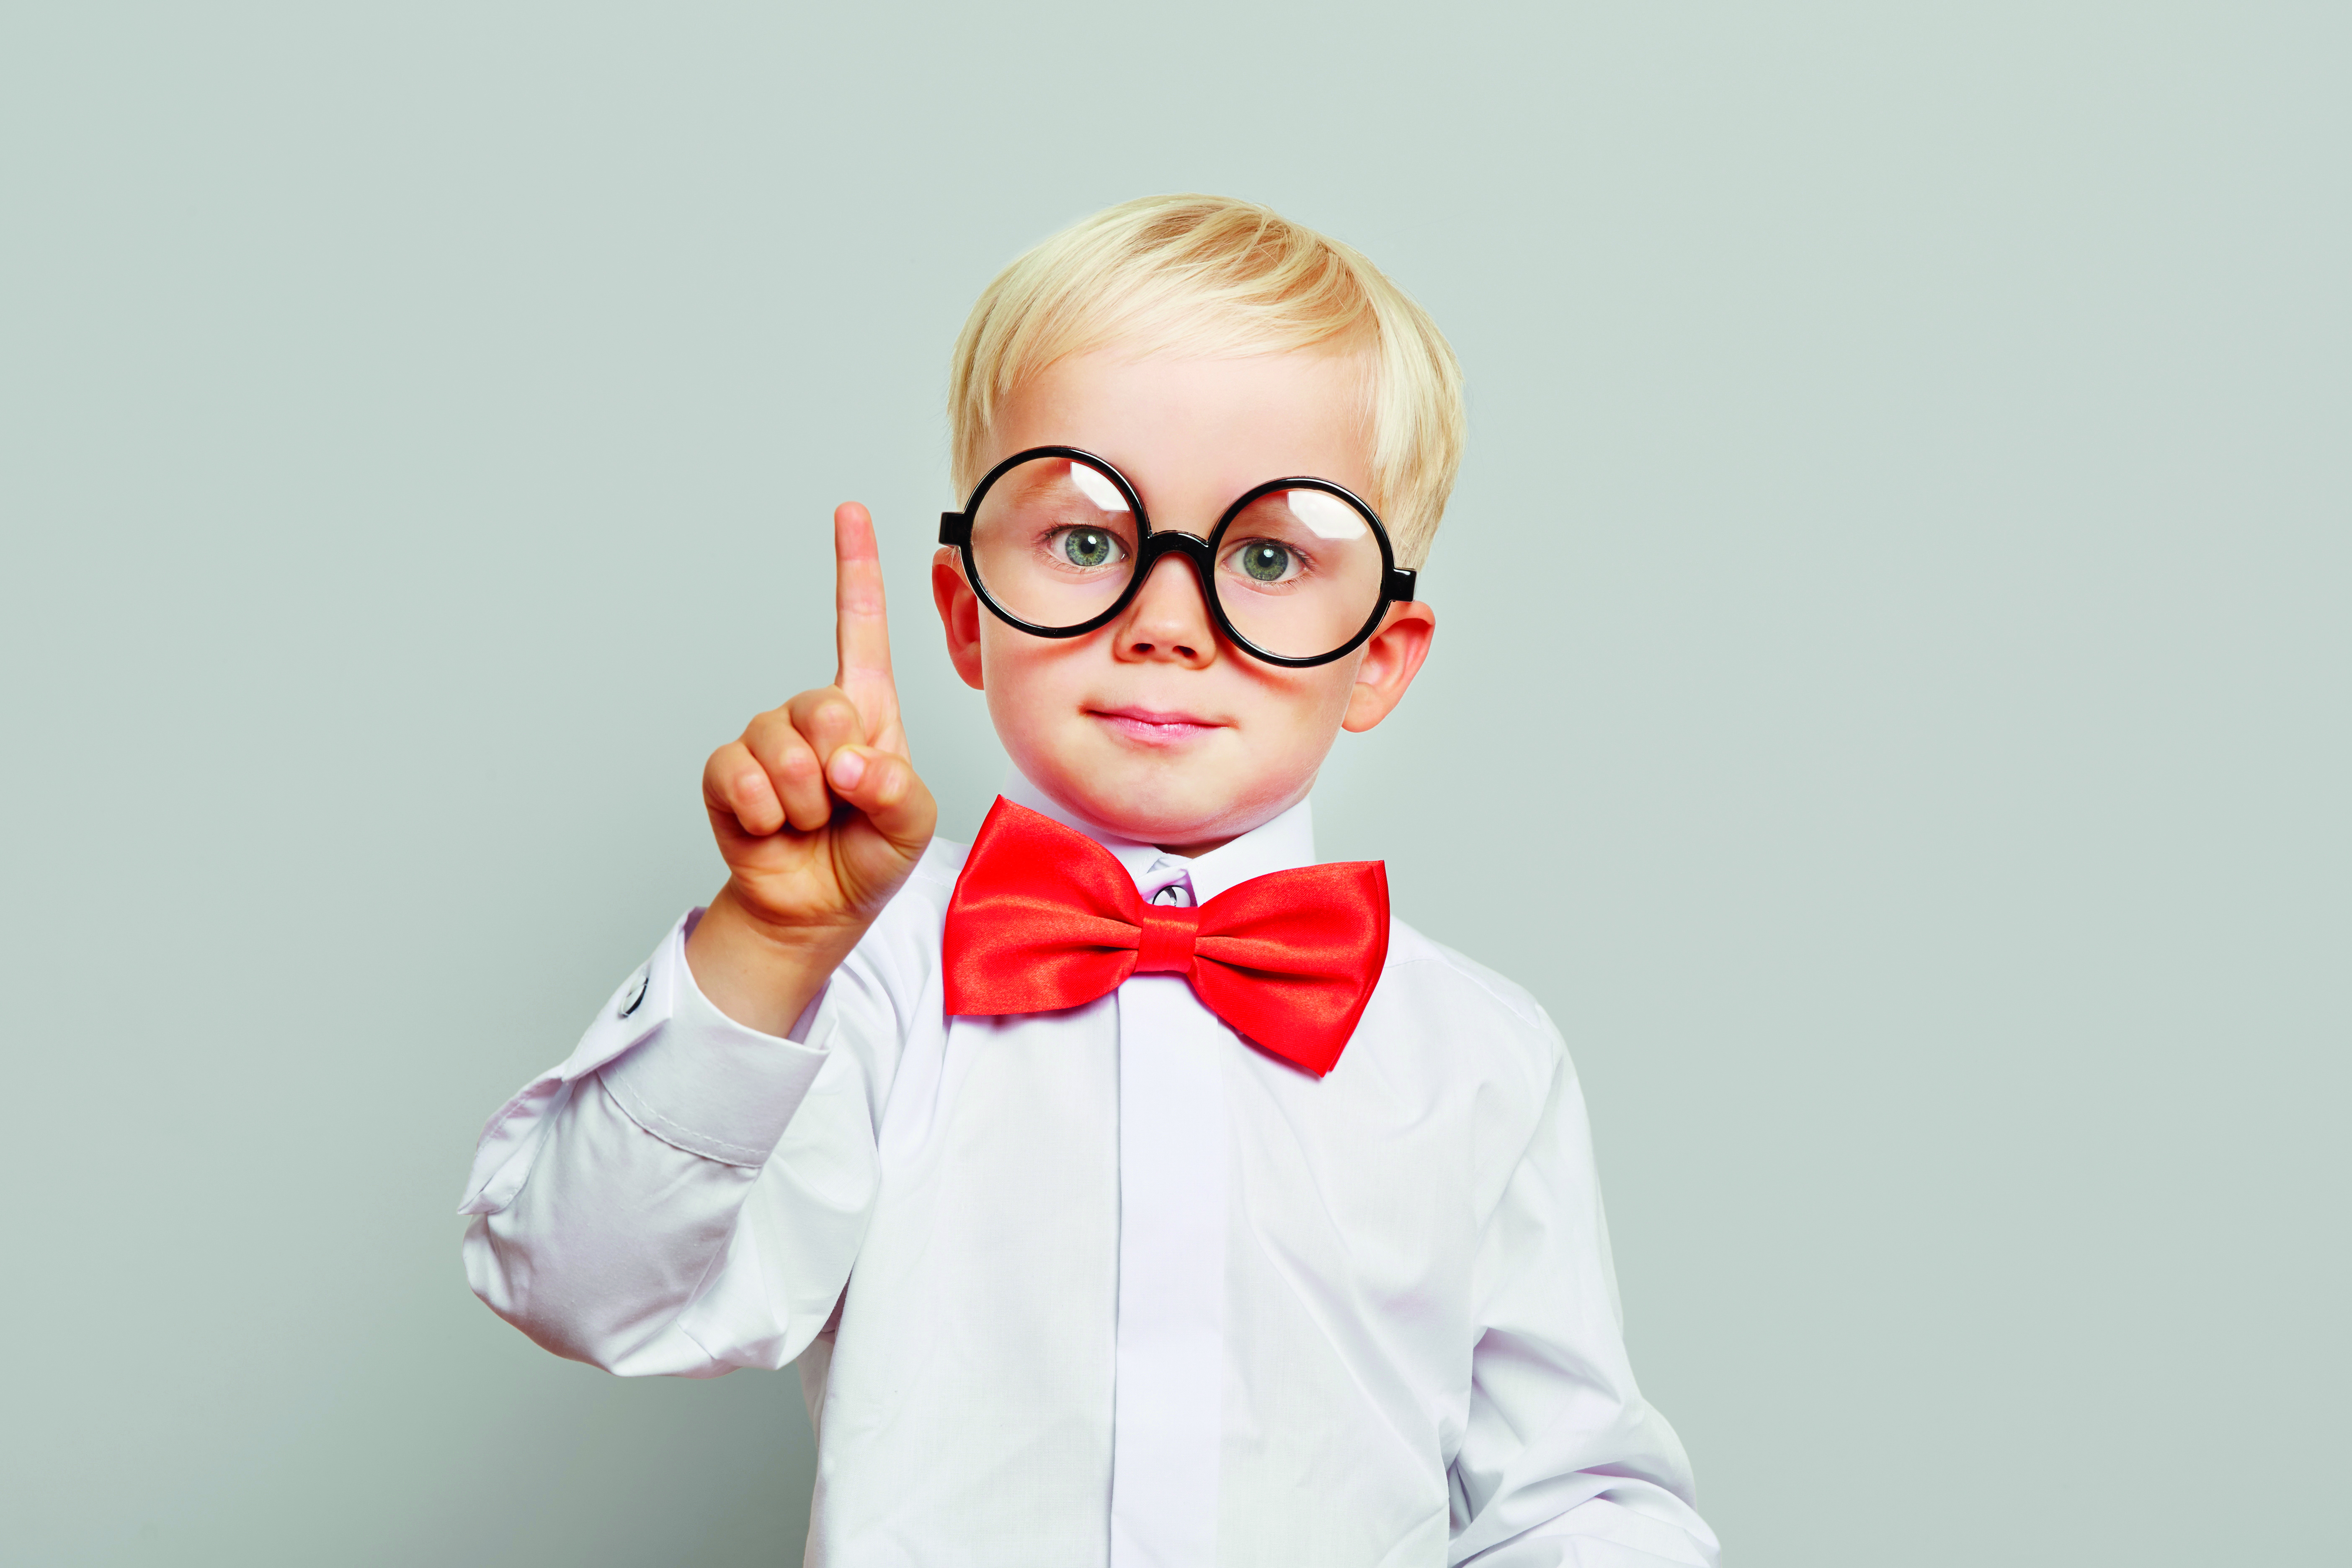 Abbildung zeigt Kind mit Brille und erhobenem Zeigefinger